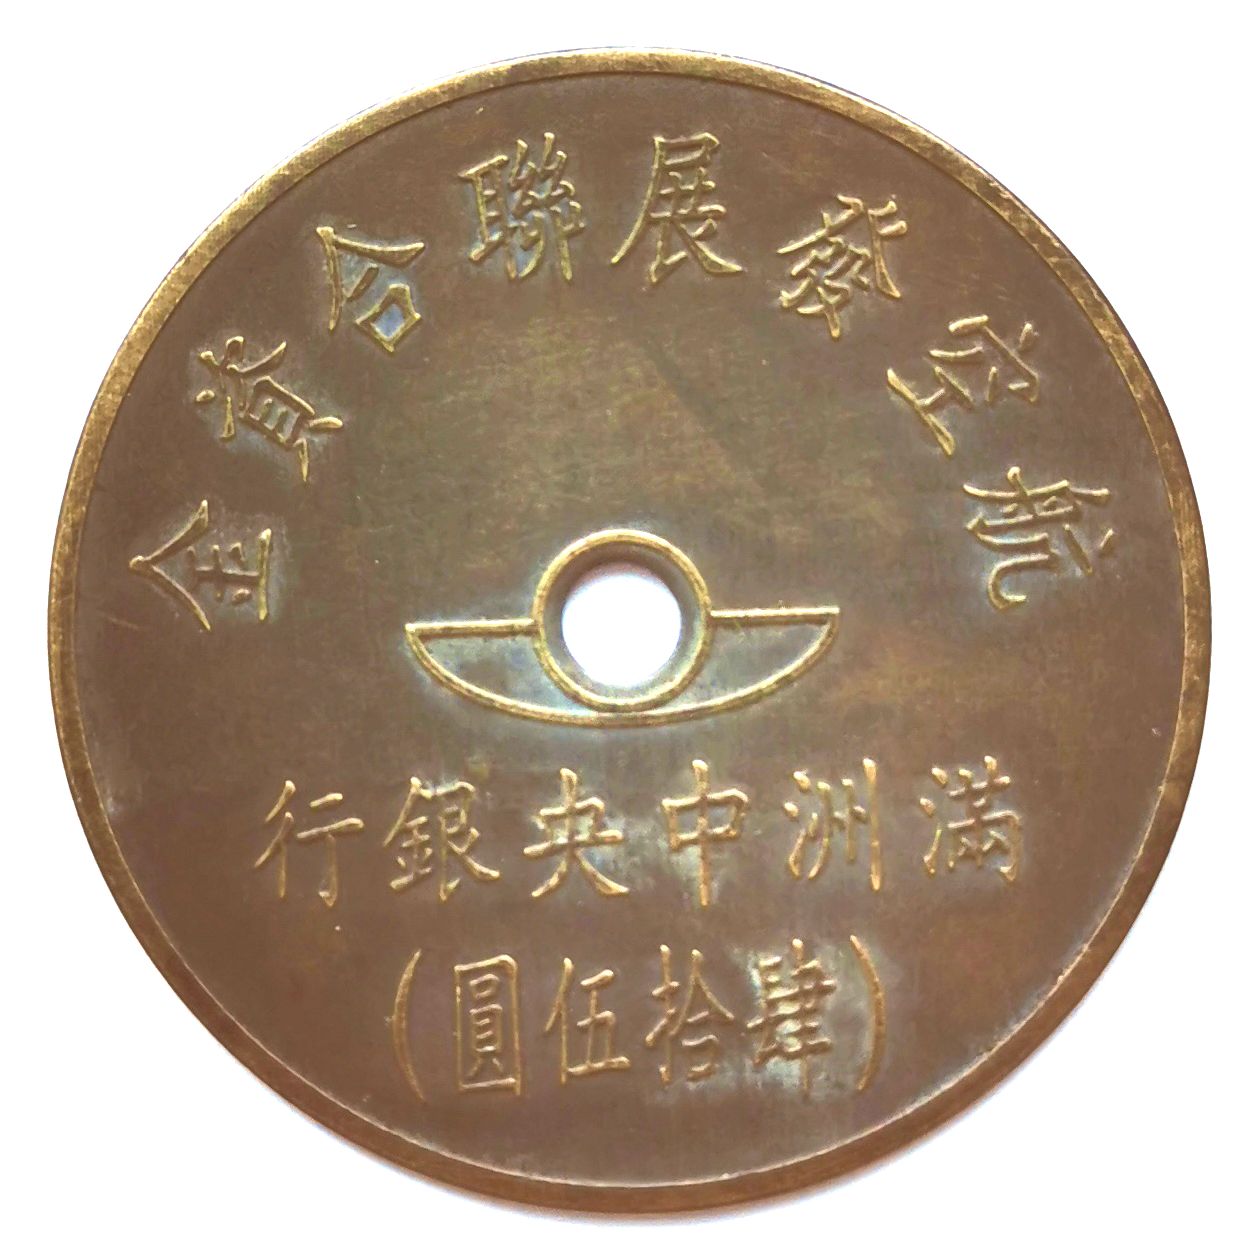 BT507, Manchukuo United Aviation Development Fund, 45 Yen Token, 1945